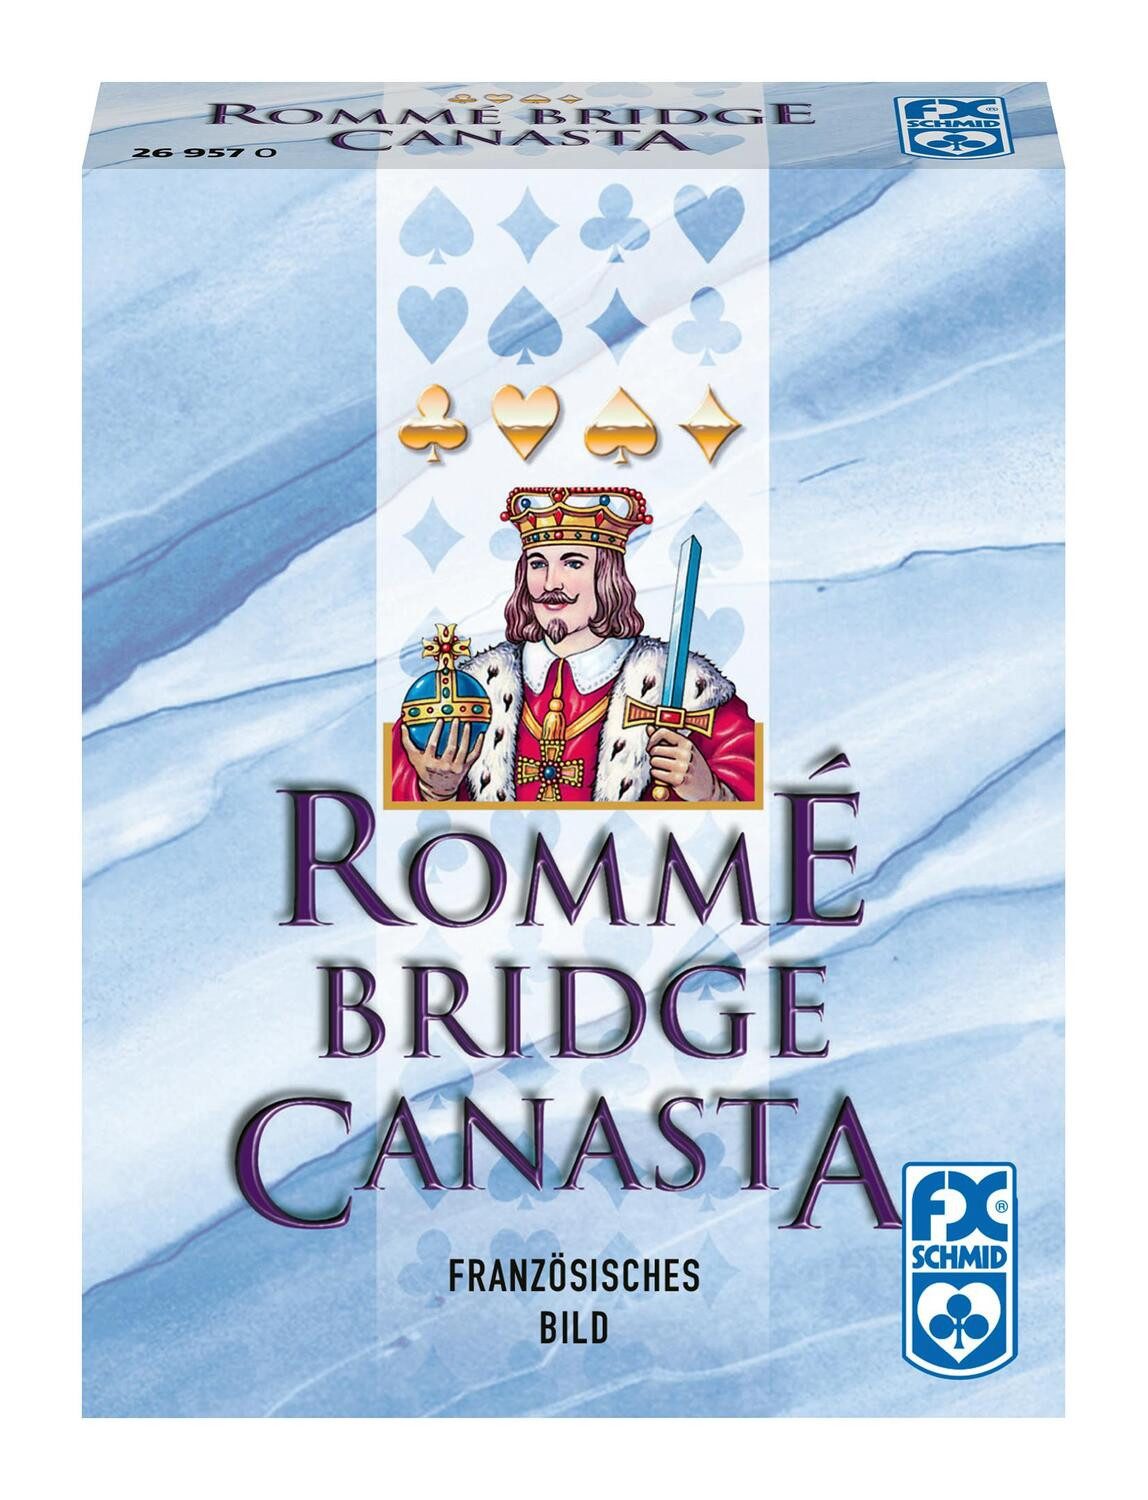 Ravensburger Spiel, Rommé Bridge Canasta